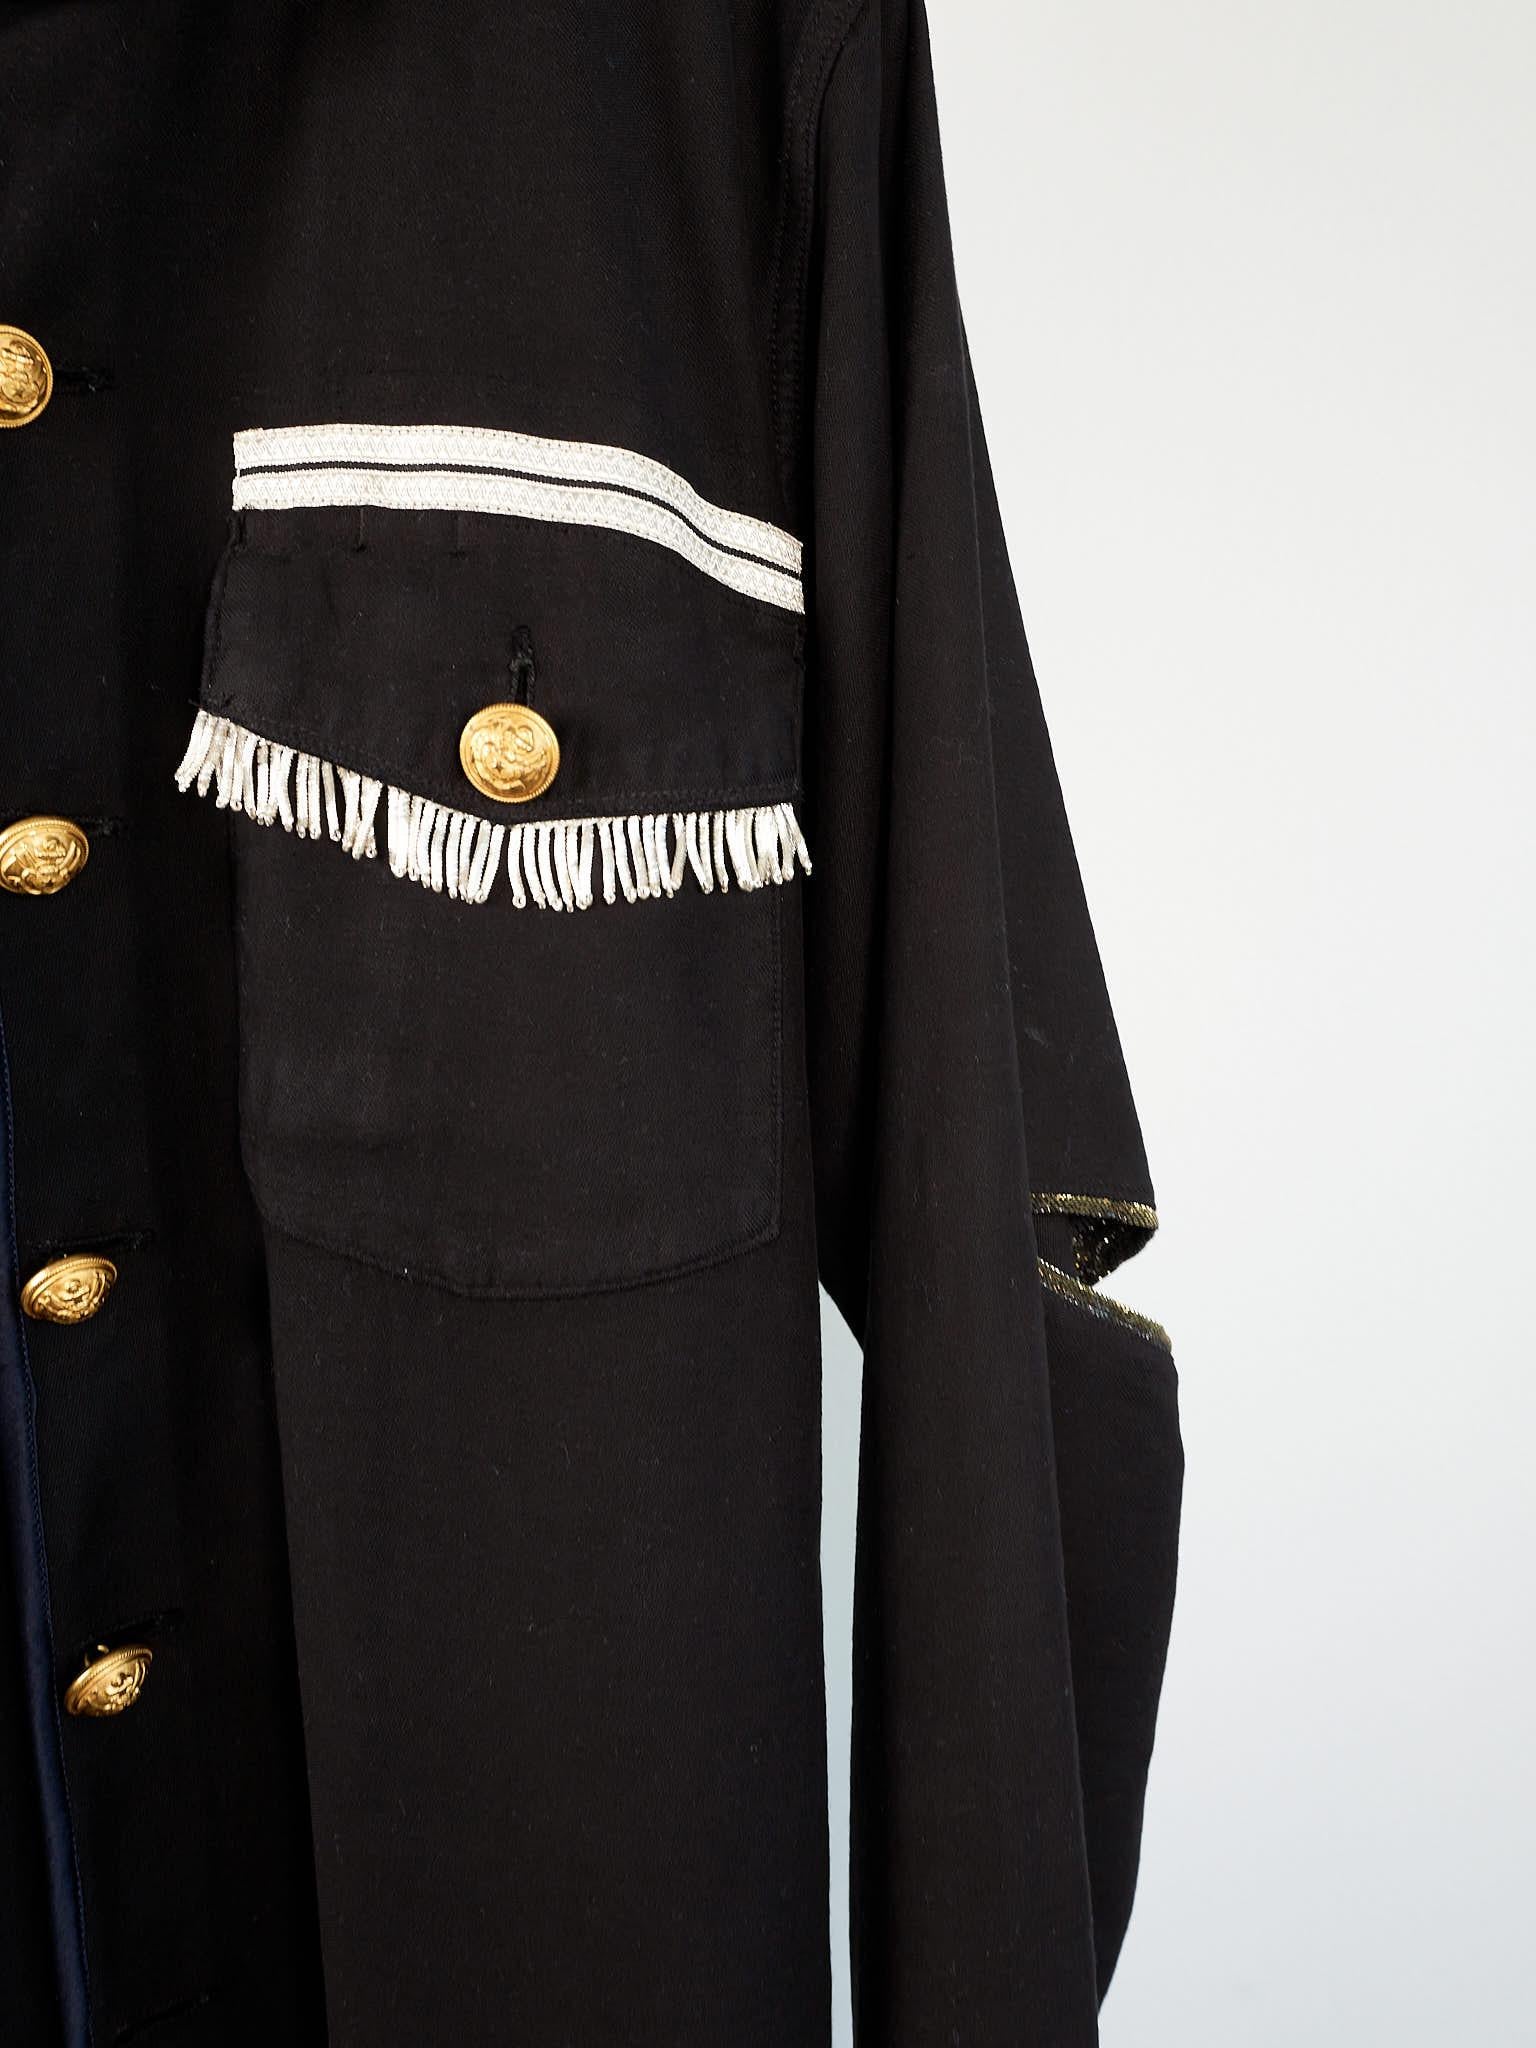 Vintage Jacket in Black Embellished Silver Fringe Braids Gold Buttons Large 4